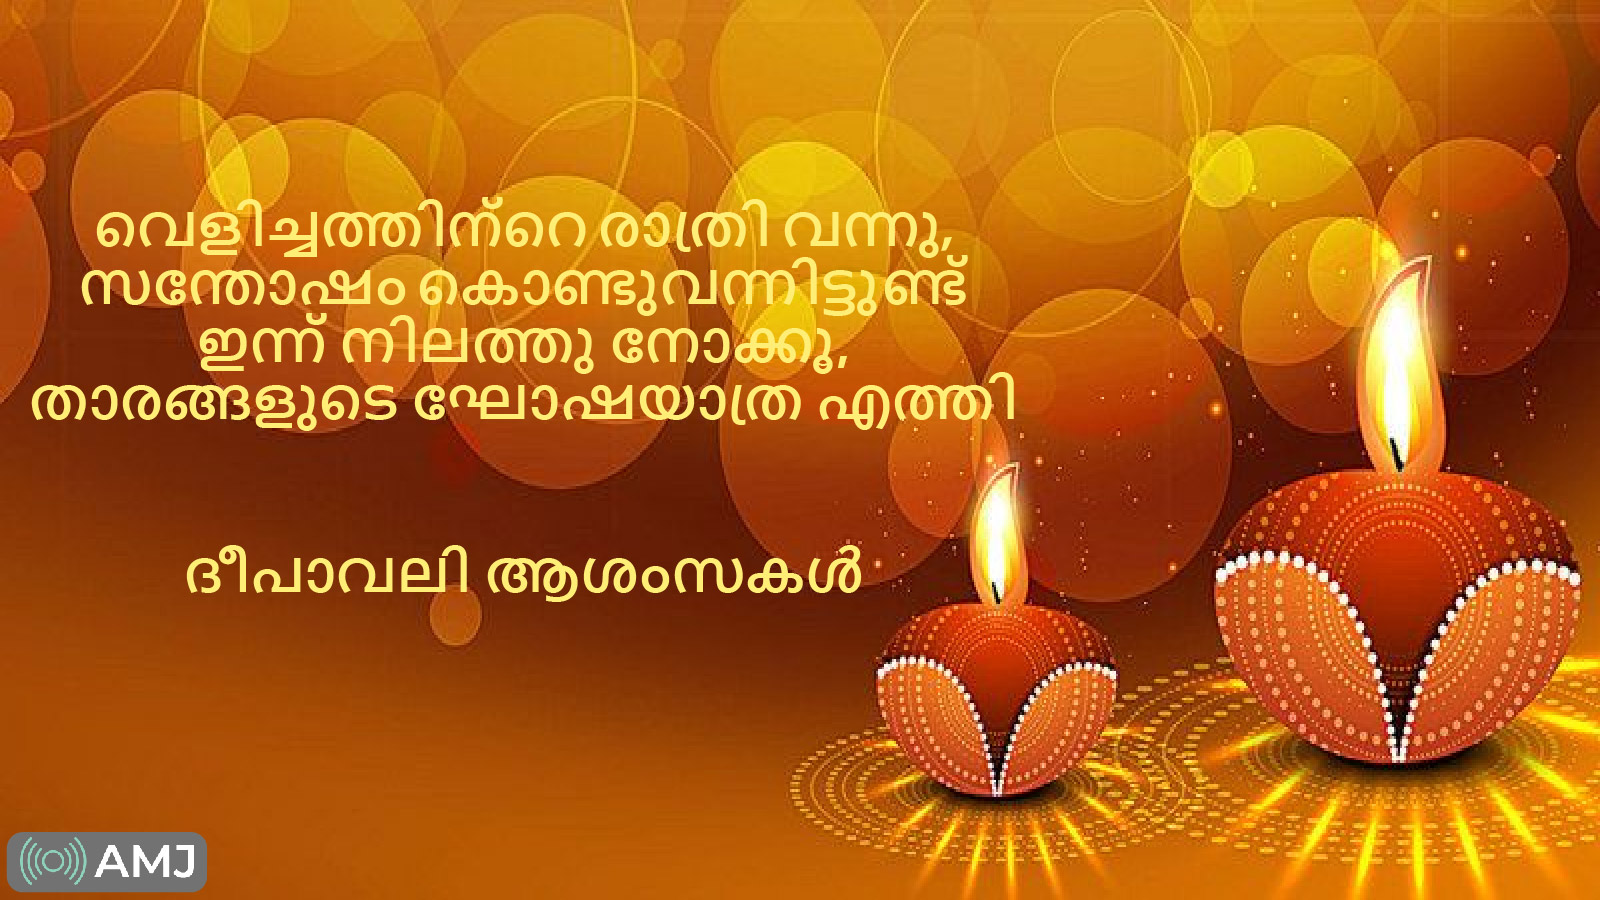 Diwali Images in Malayalam